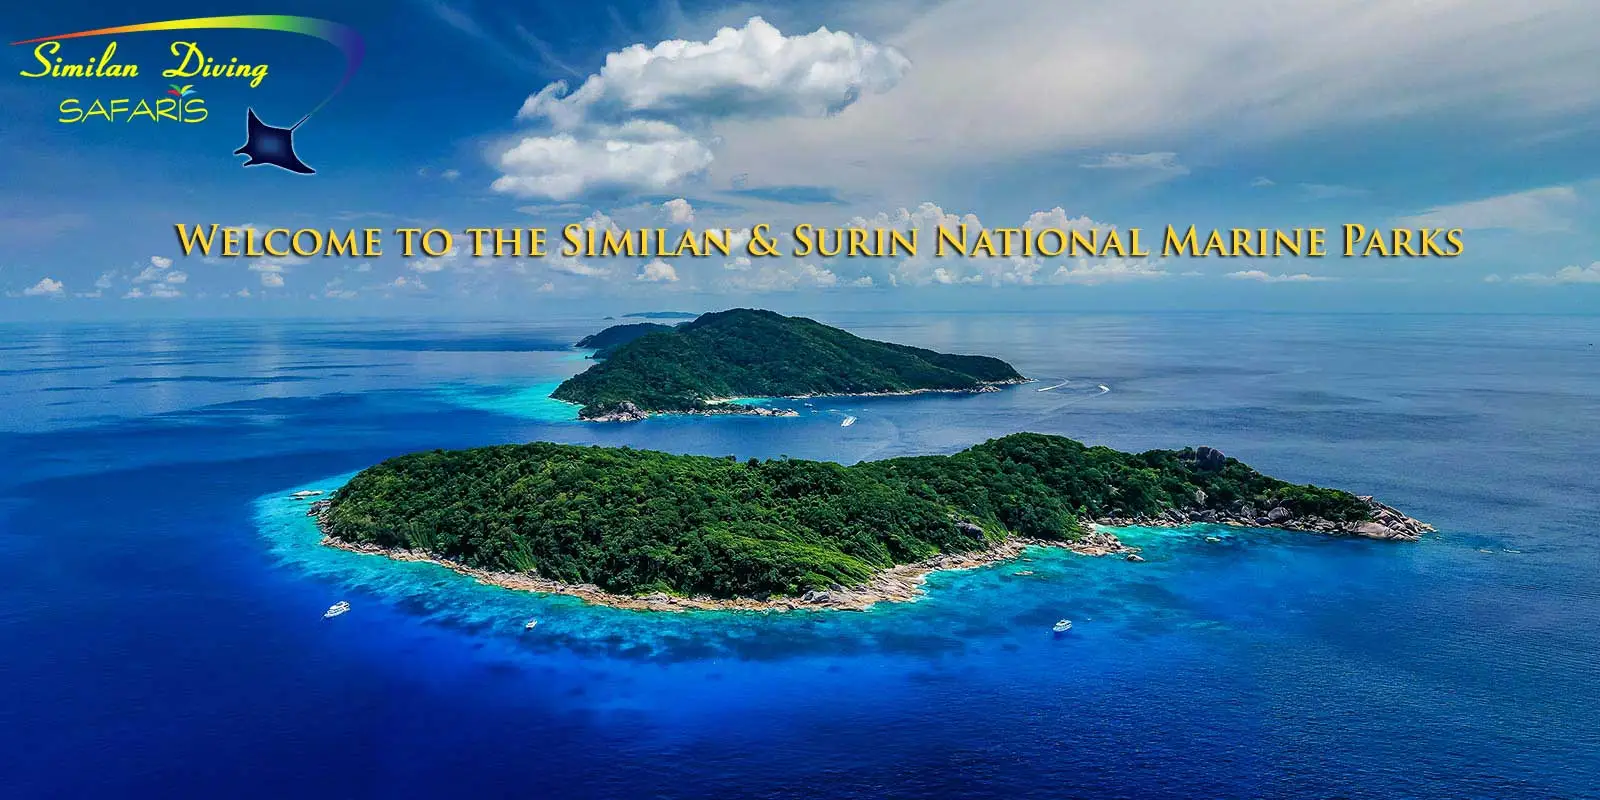 Similan Islands #8 & #9 aerial view with Similan Diving Safaris